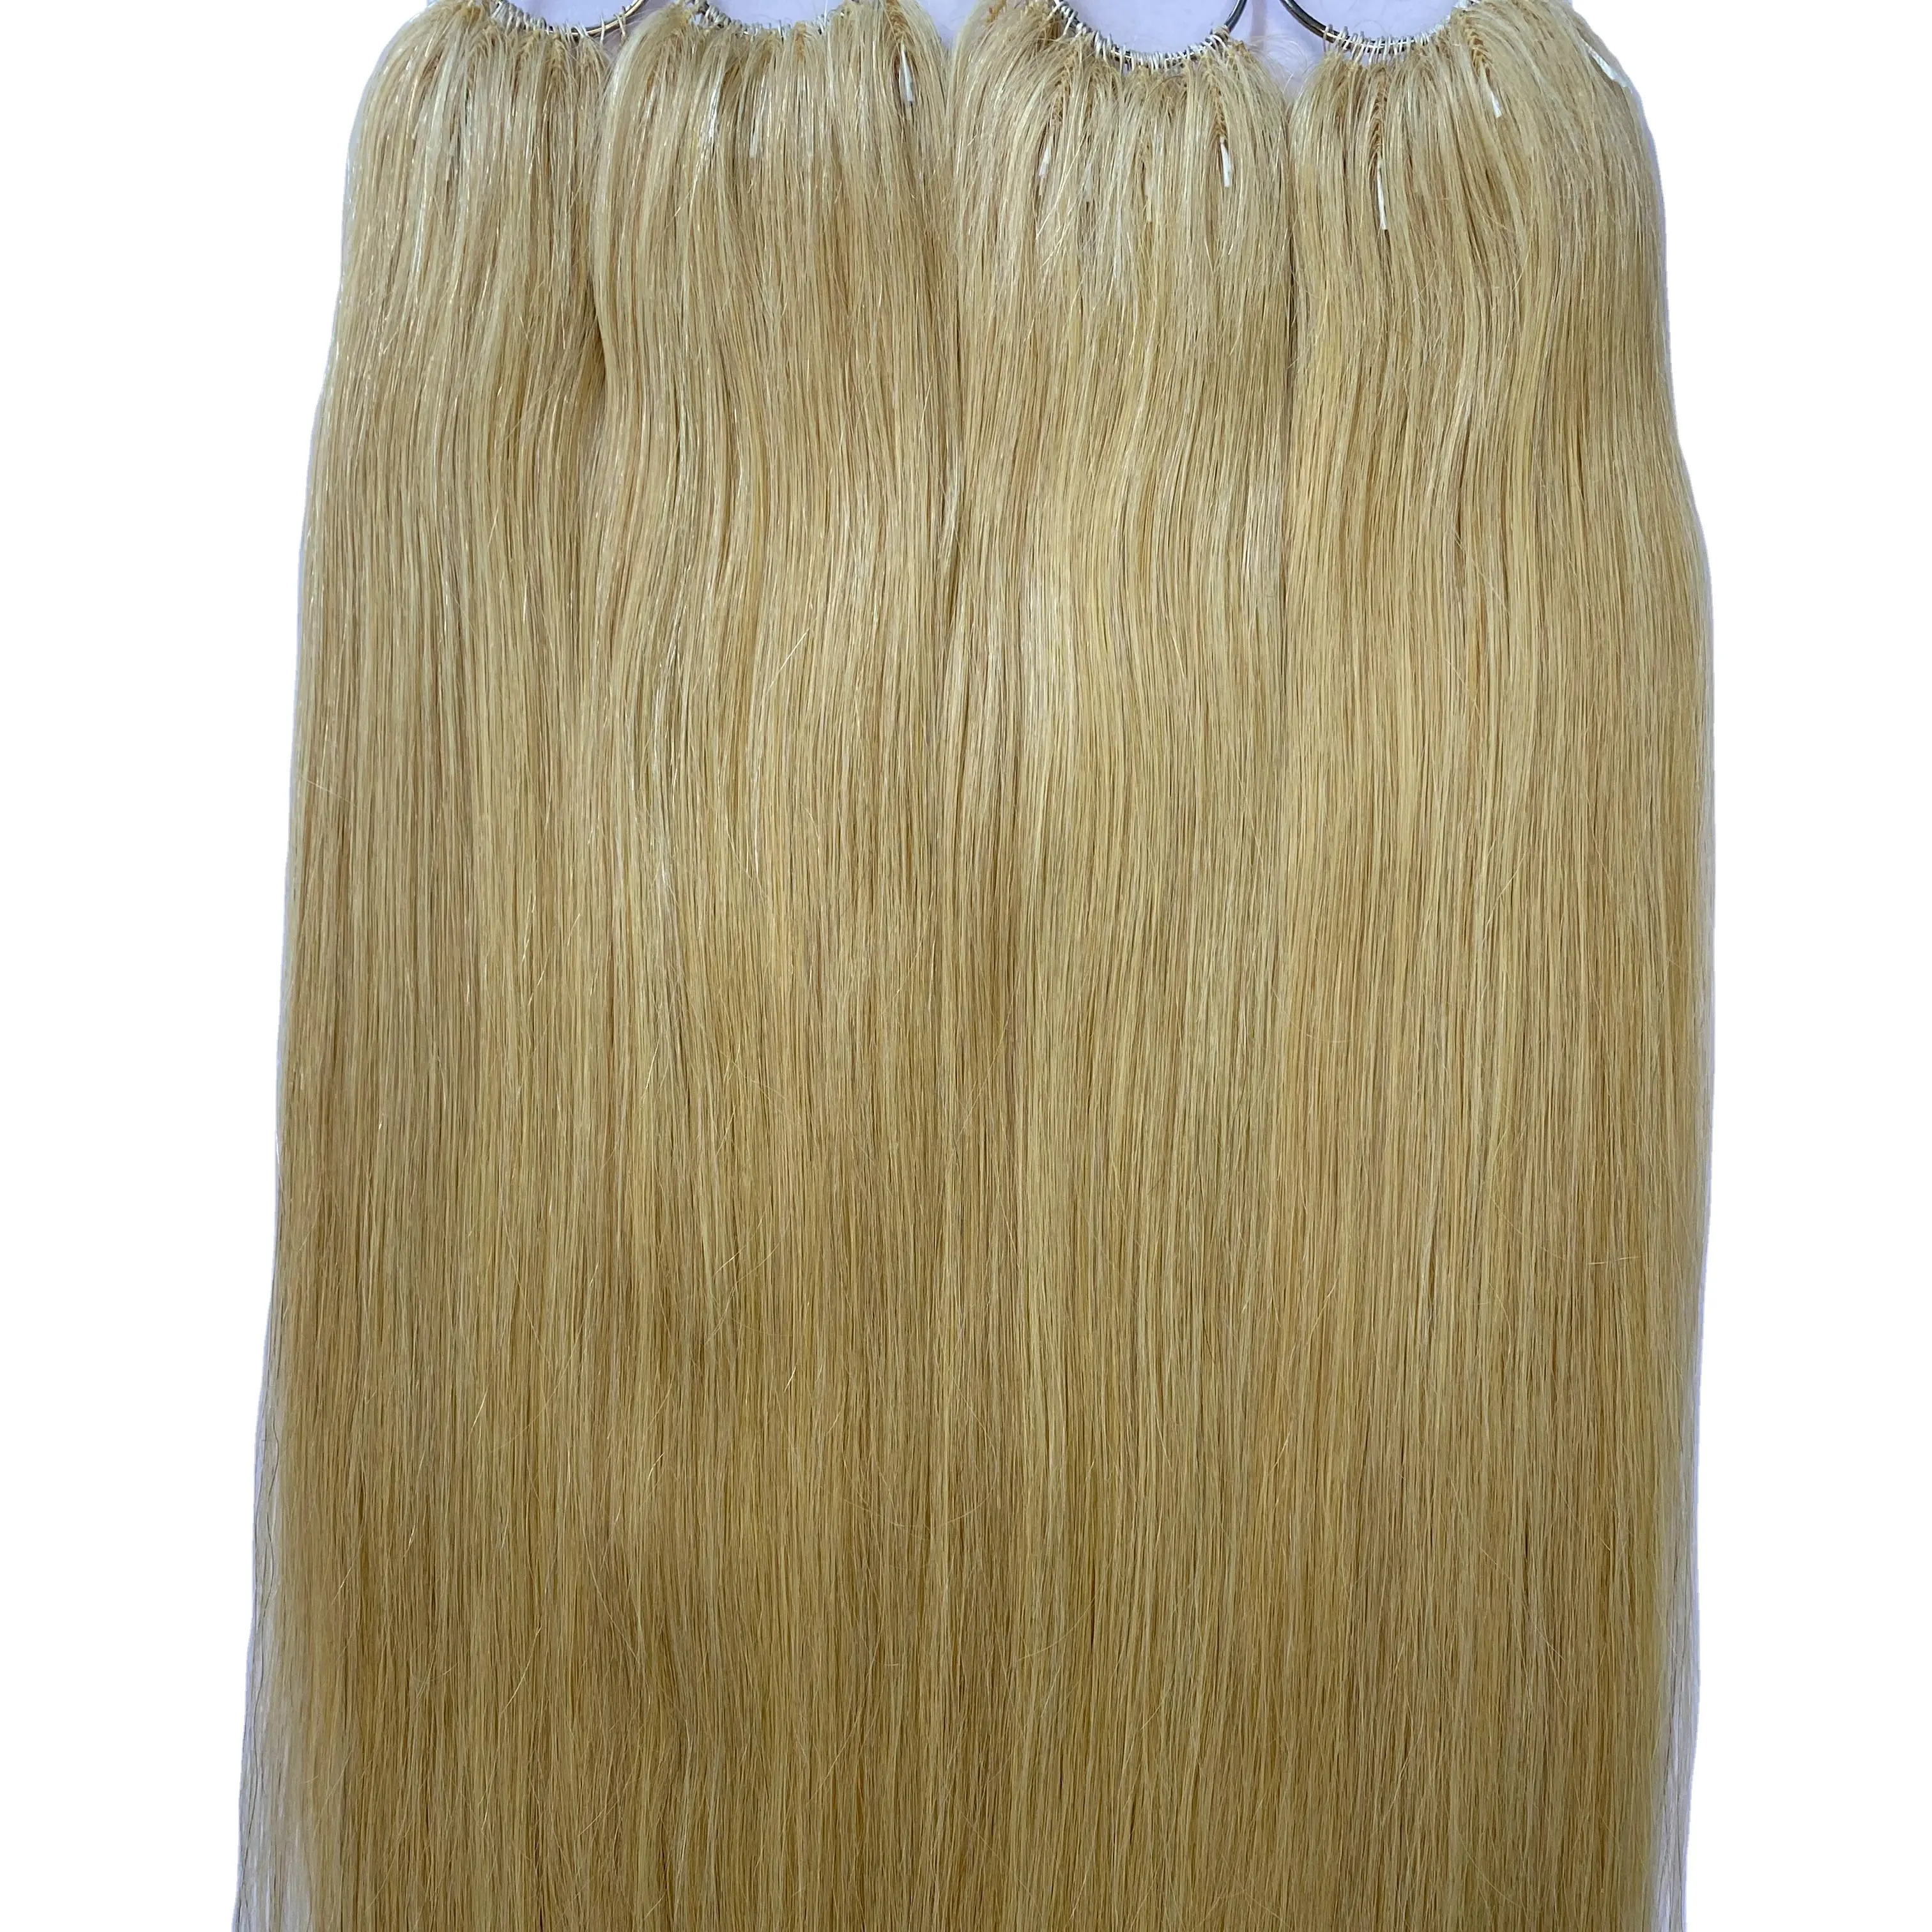 新しいトレンド製品工場価格レミーヘアエクステンション100% ベトナム人毛シルキーベトナム髪ナチュラルカラー